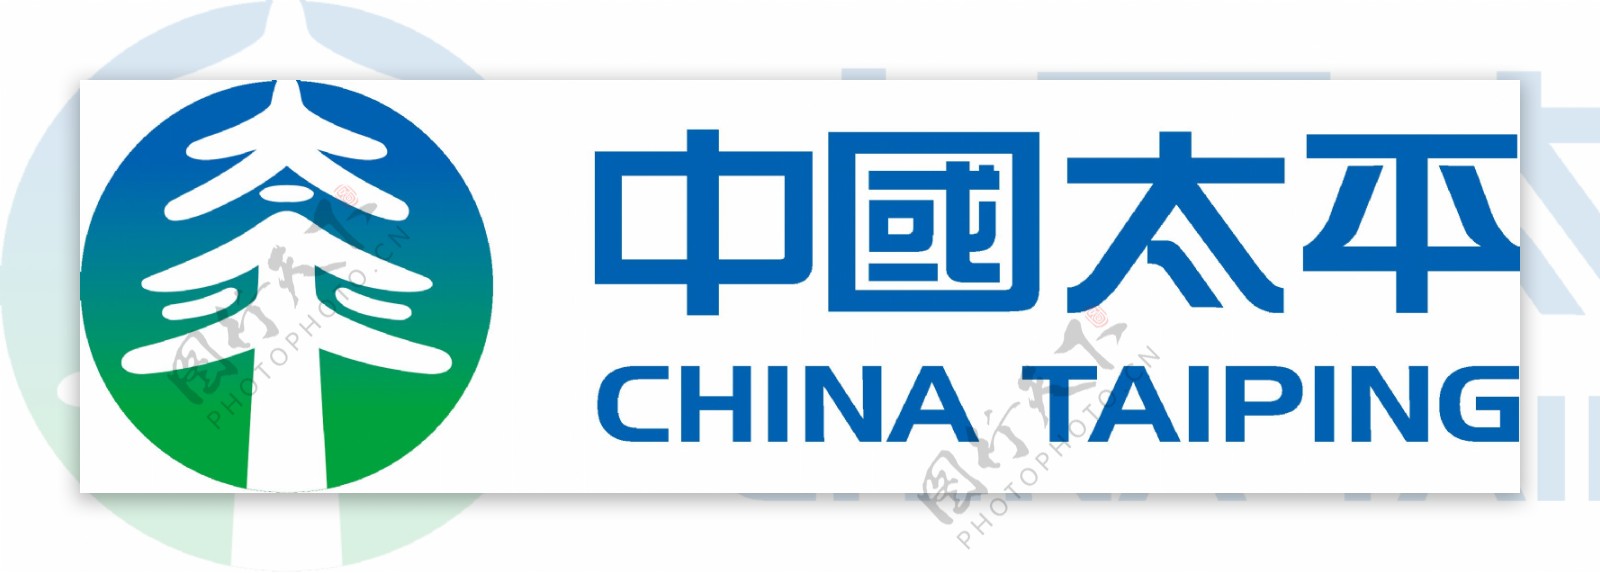 中国太平logo图片